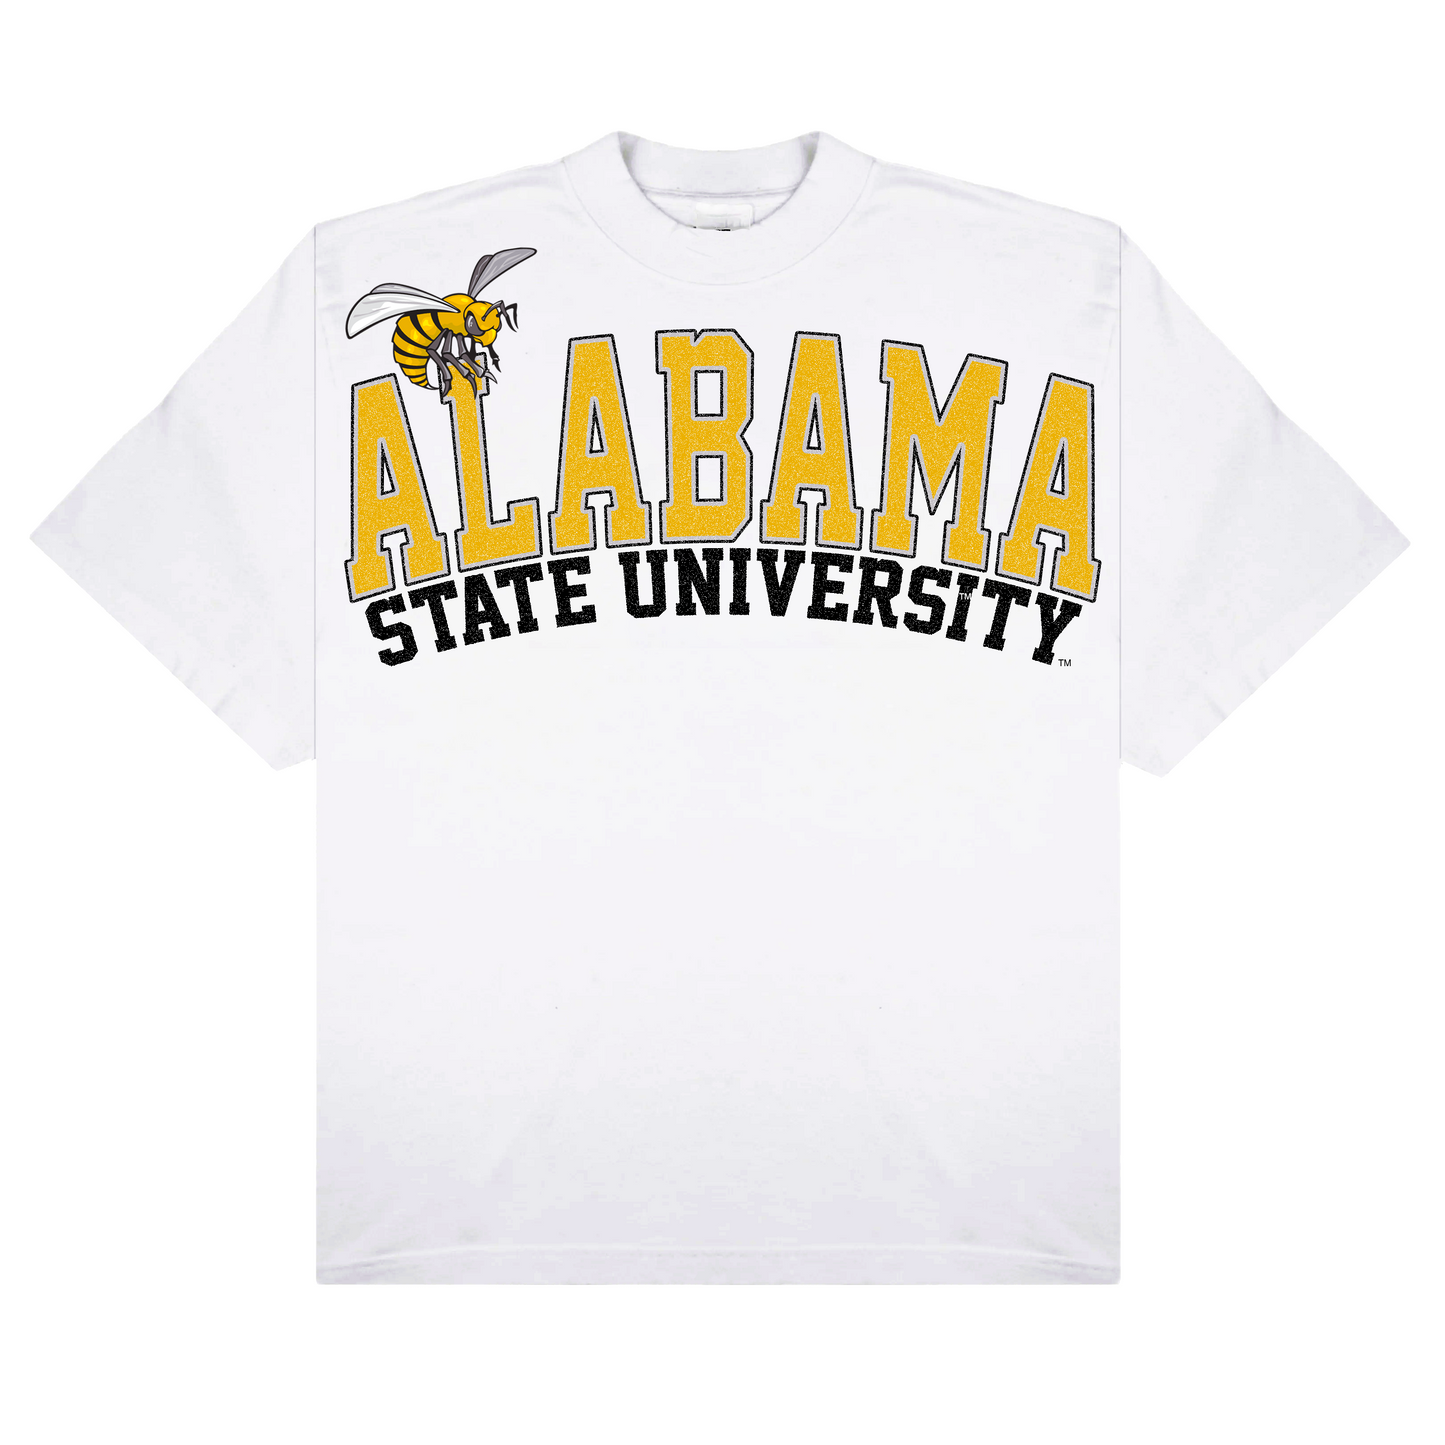 Alabama State T-shirt - 1921 movement